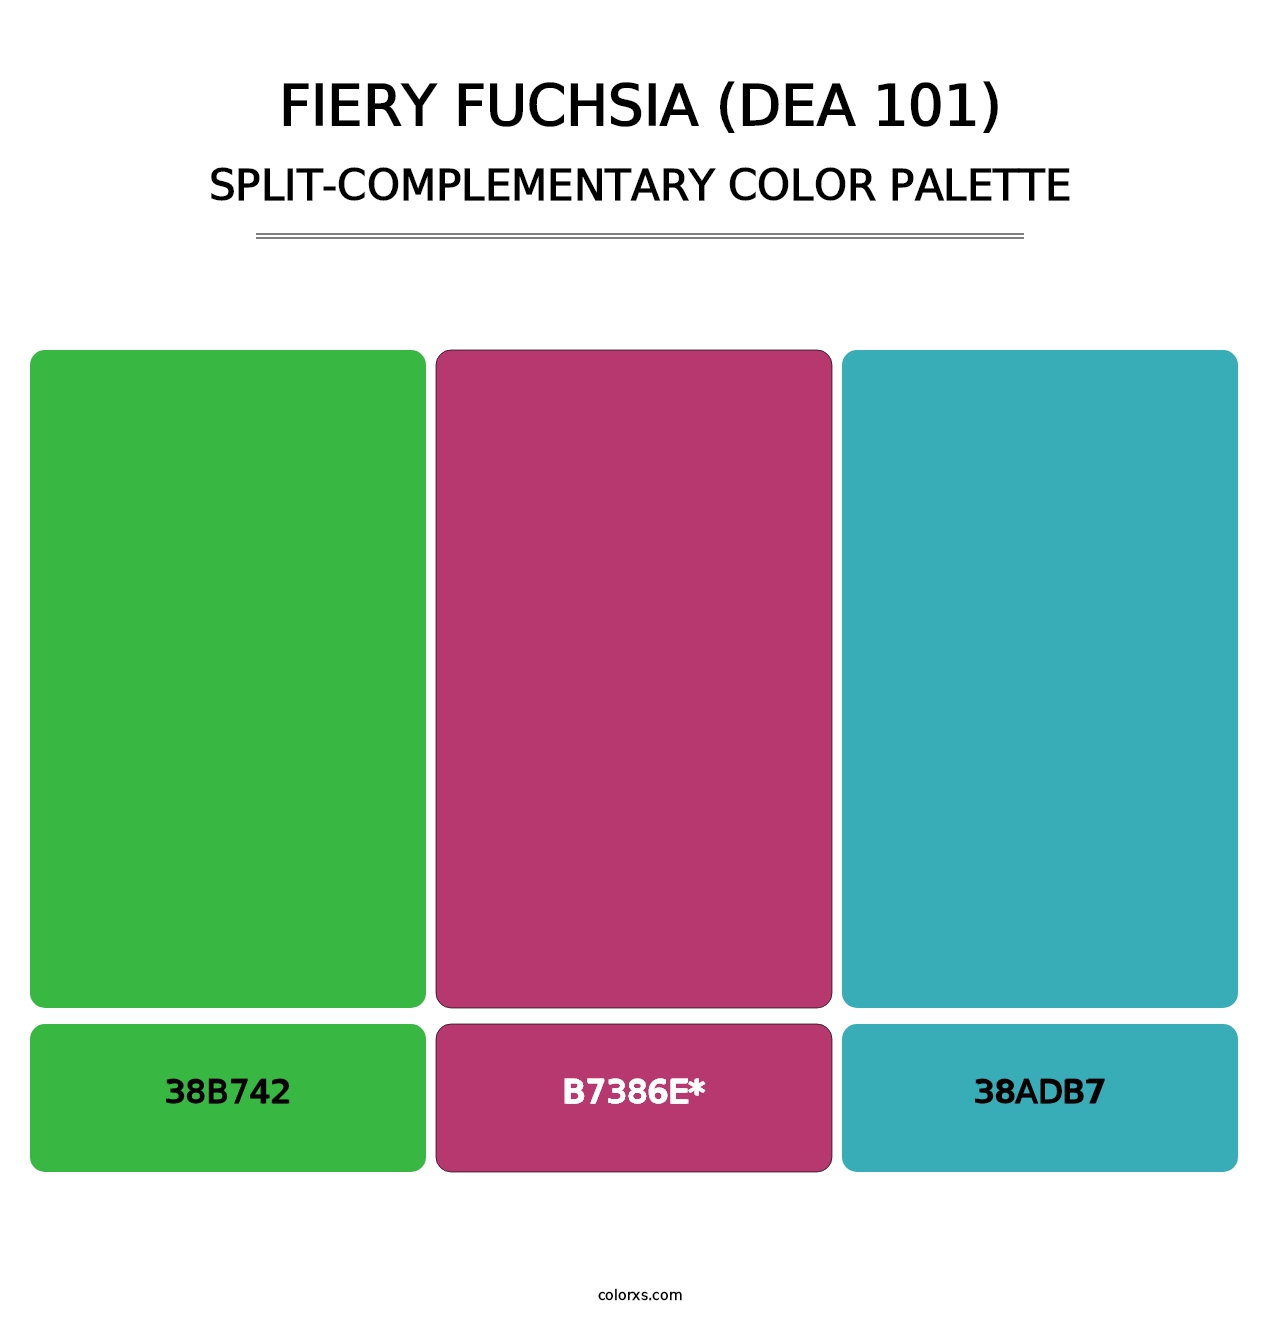 Fiery Fuchsia (DEA 101) - Split-Complementary Color Palette